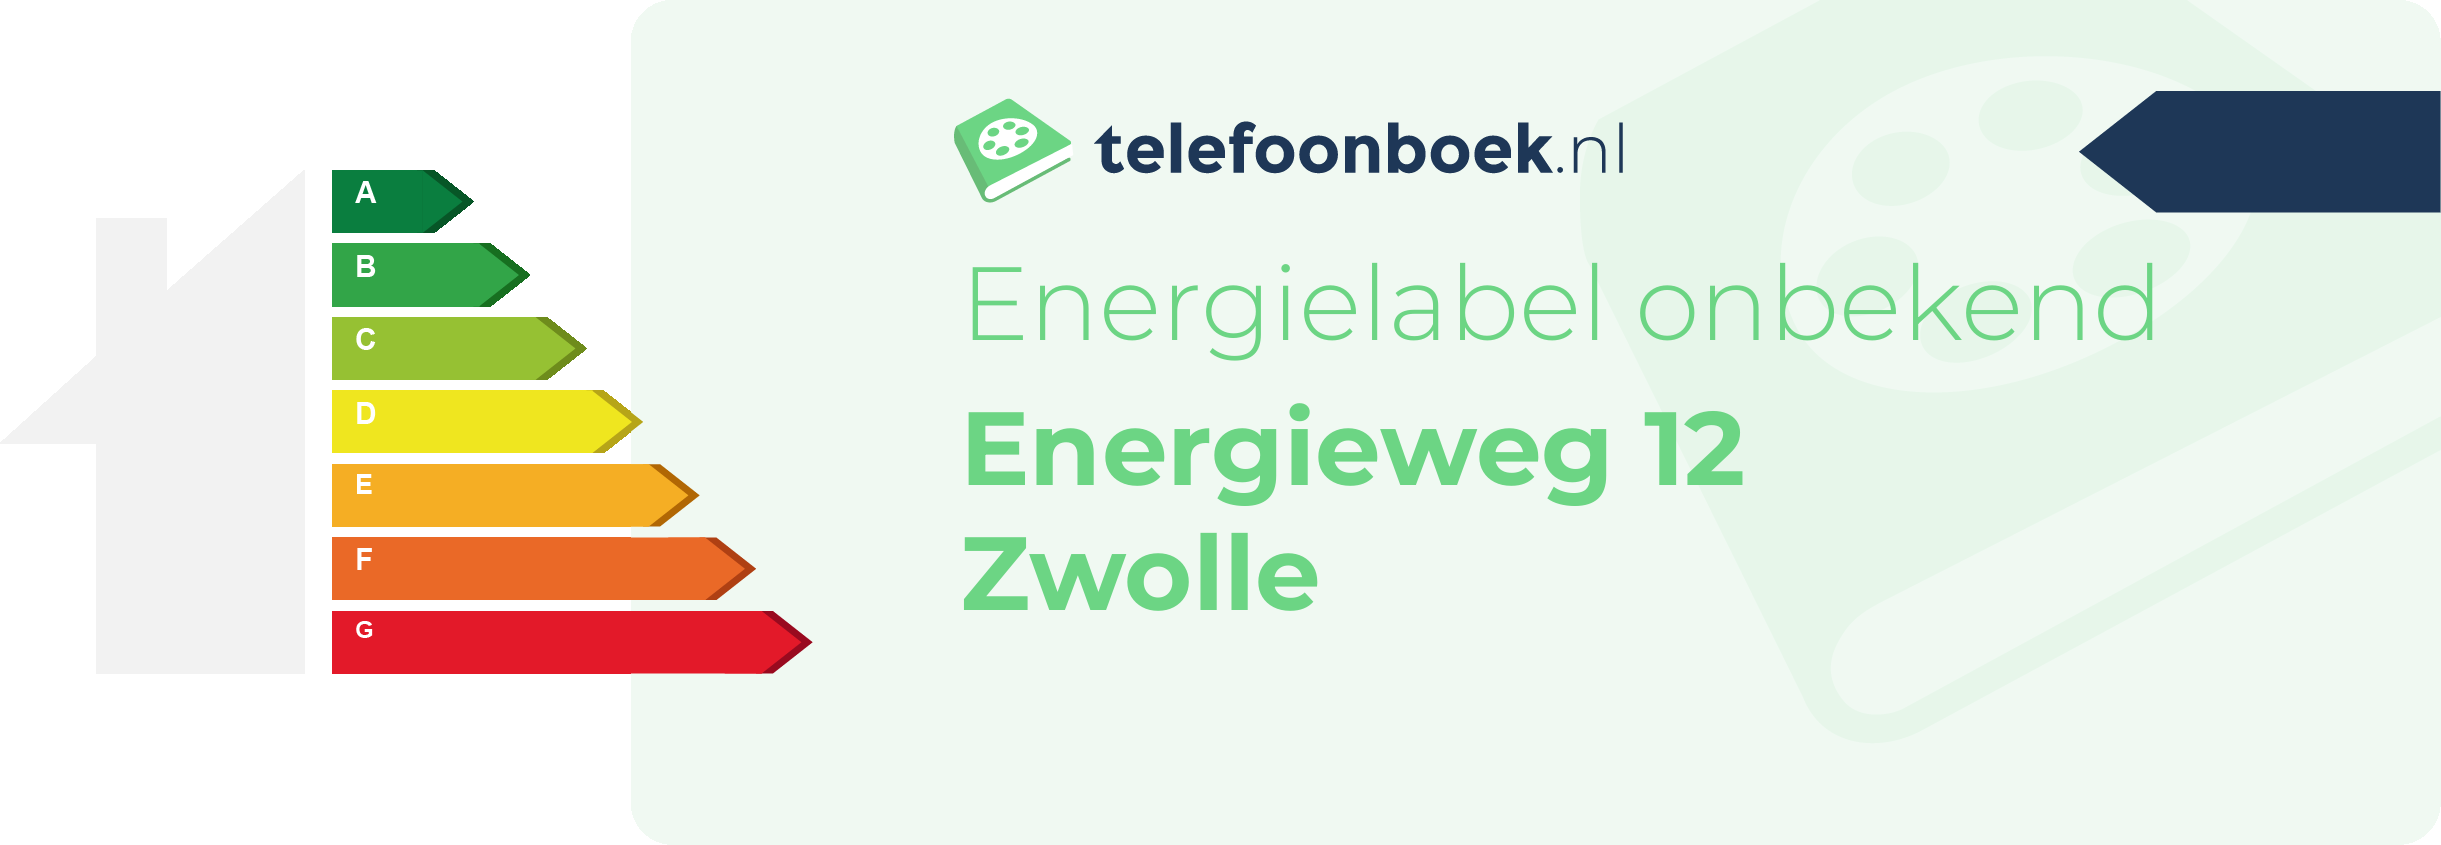 Energielabel Energieweg 12 Zwolle